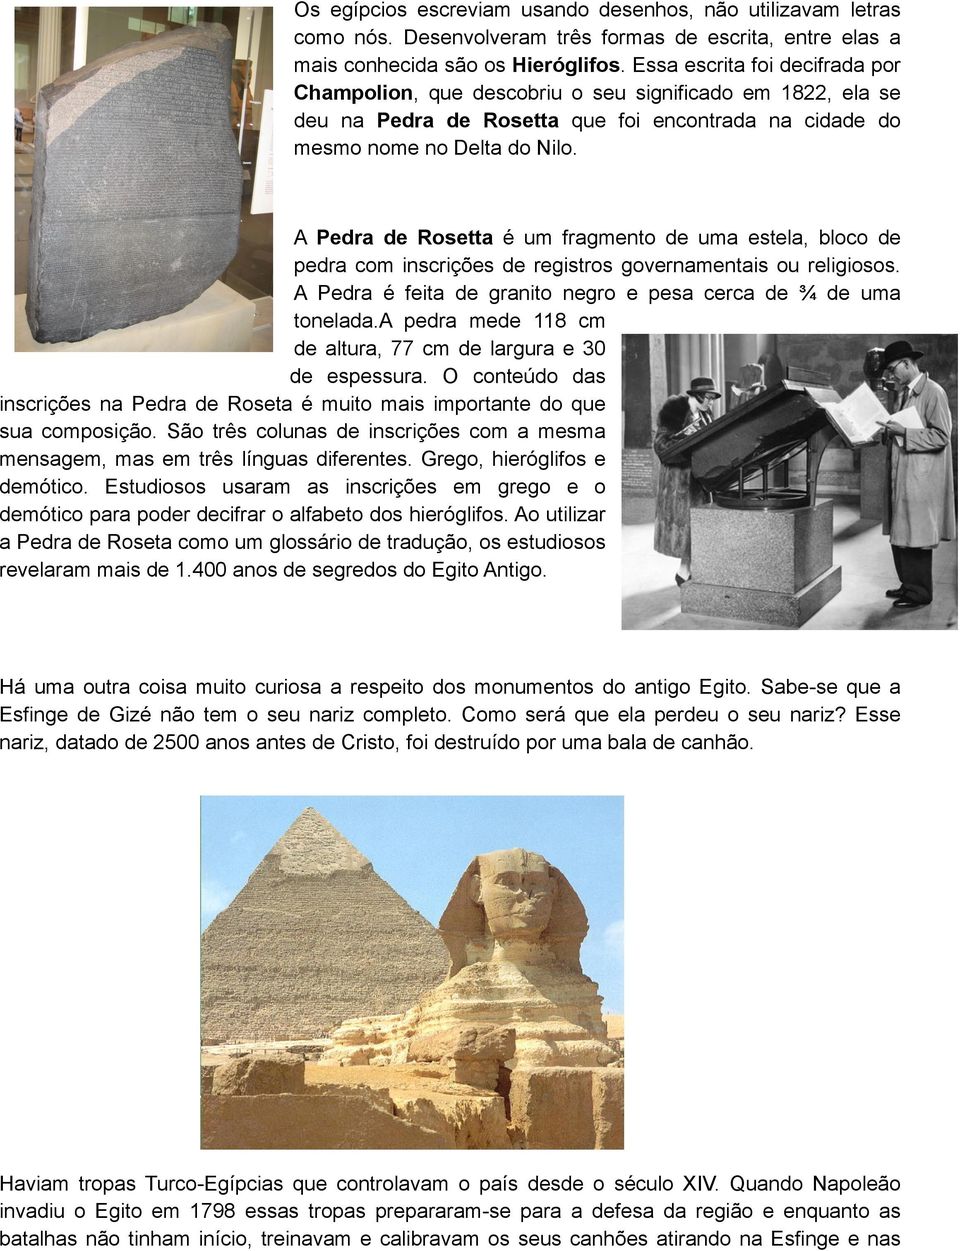 A Pedra de Rosetta é um fragmento de uma estela, bloco de pedra com inscrições de registros governamentais ou religiosos. A Pedra é feita de granito negro e pesa cerca de ¾ de uma tonelada.